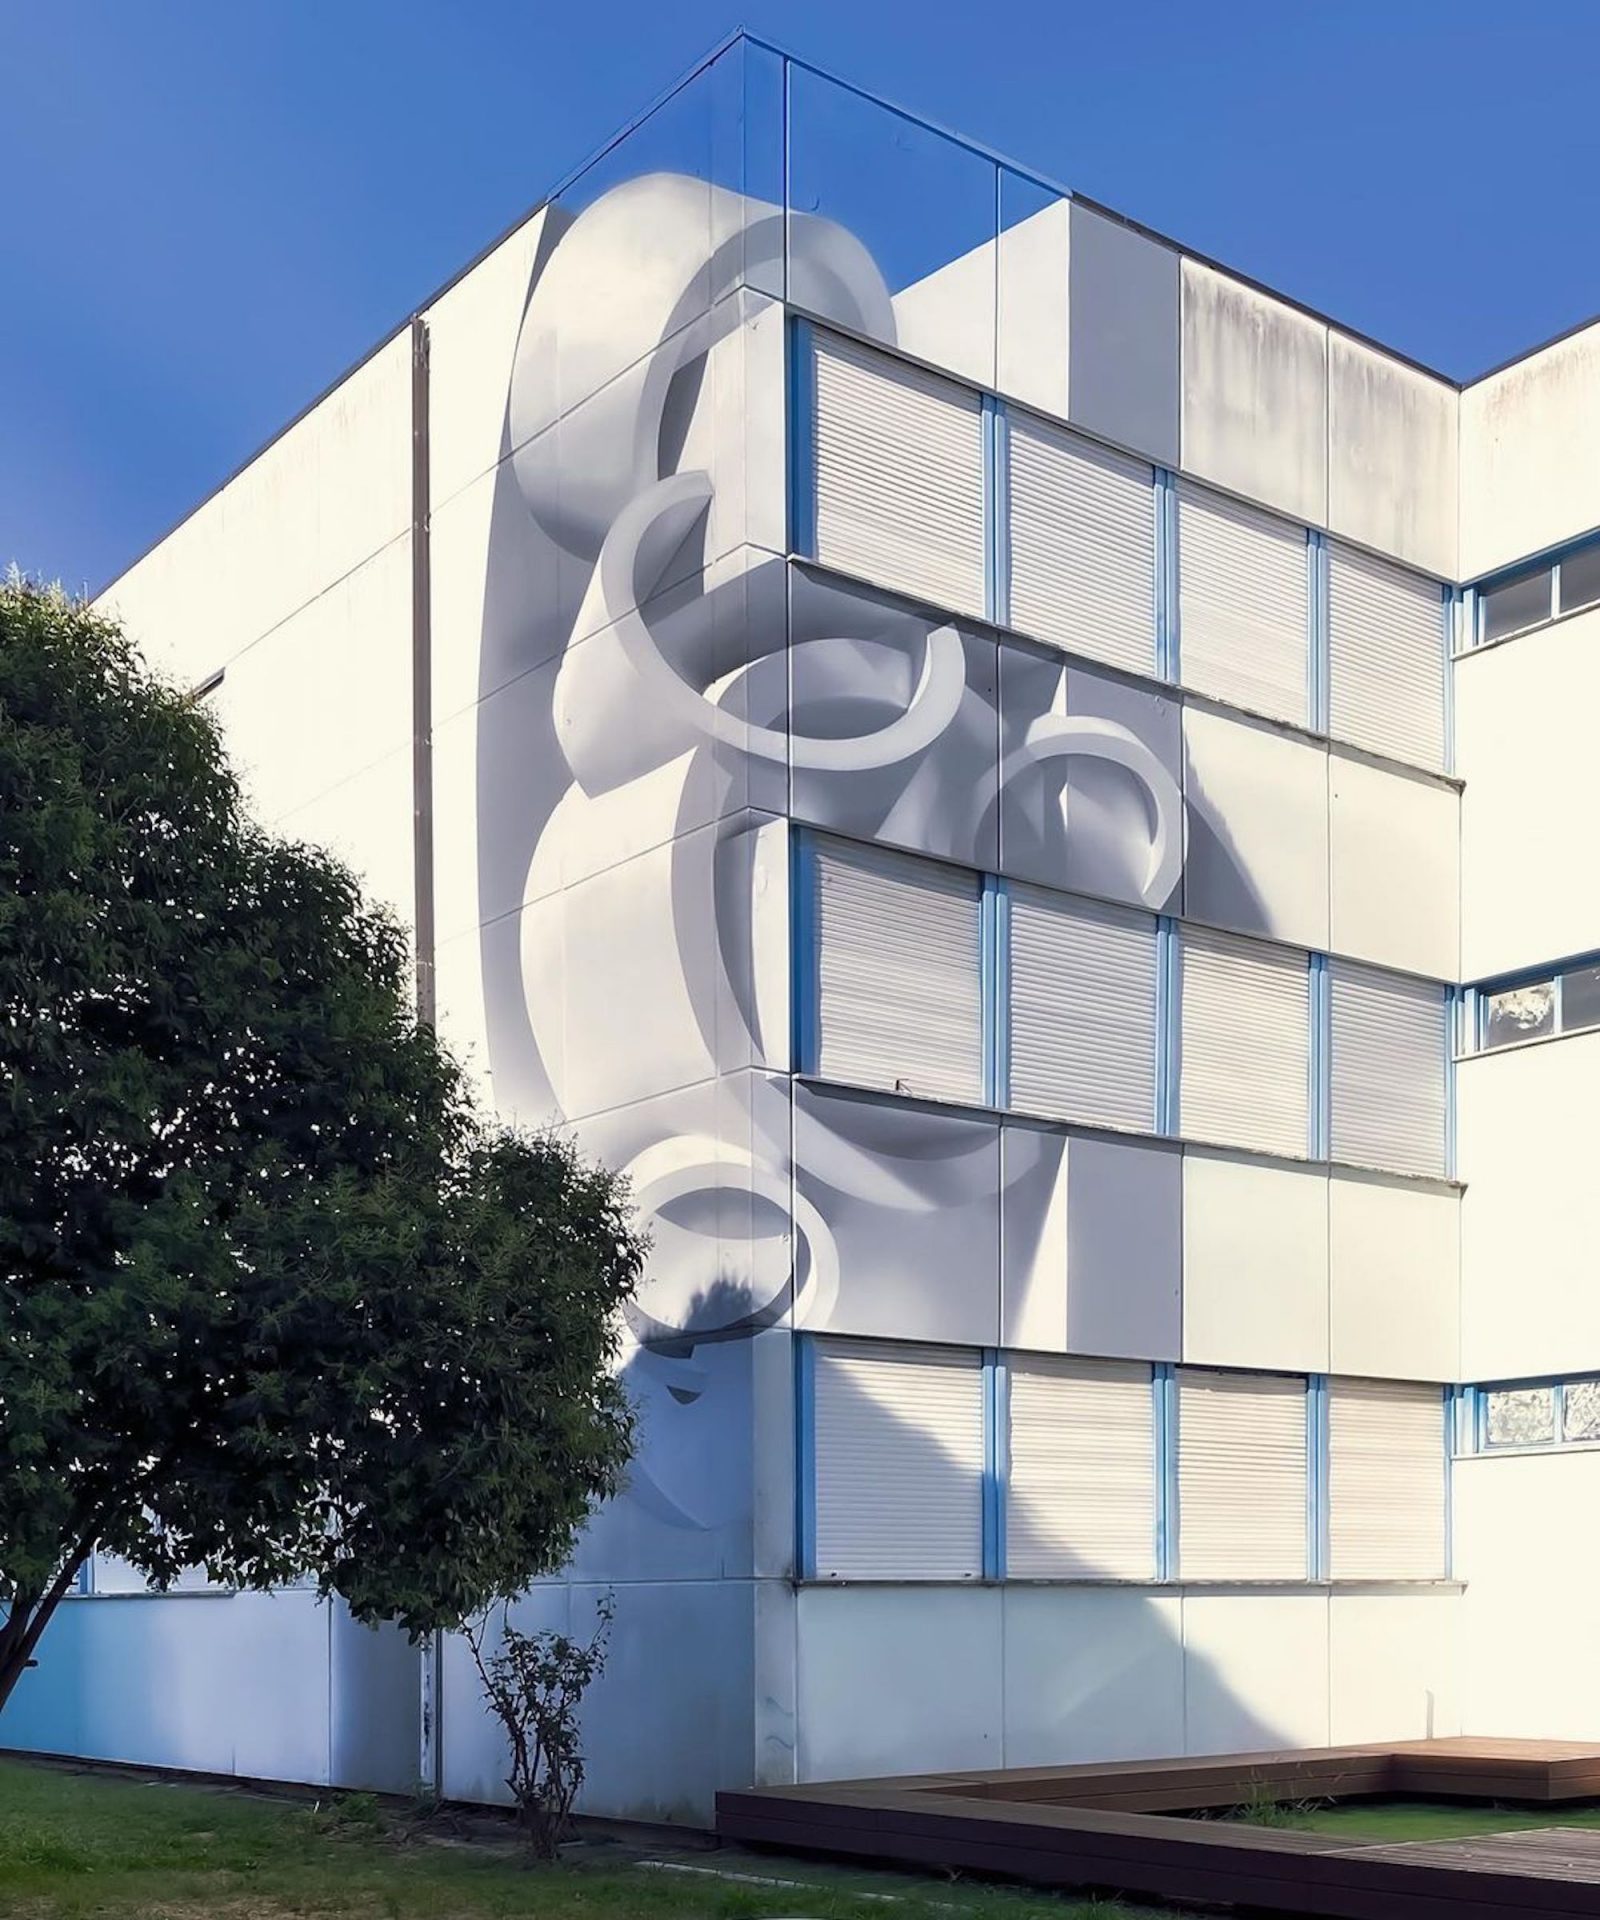 L'artiste Peeta peint d'incroyables illusions d'optique sur les murs